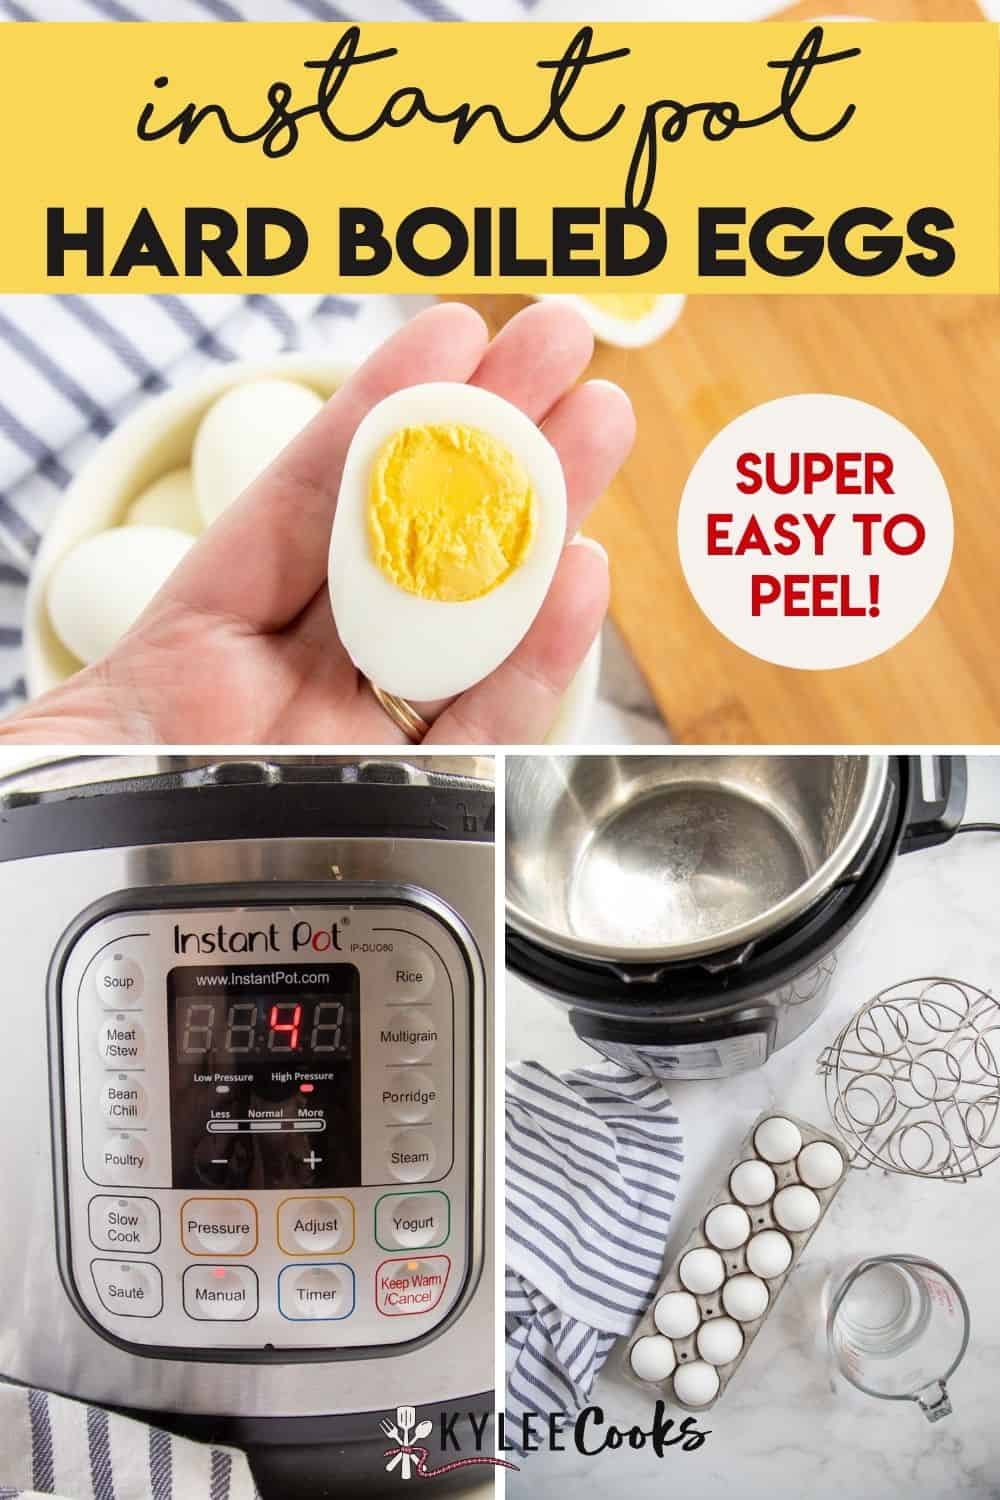 https://www.kyleecooks.com/wp-content/uploads/2021/12/Instant-Pot-Boiled-Eggs-PIN-1000x1500-1.jpg